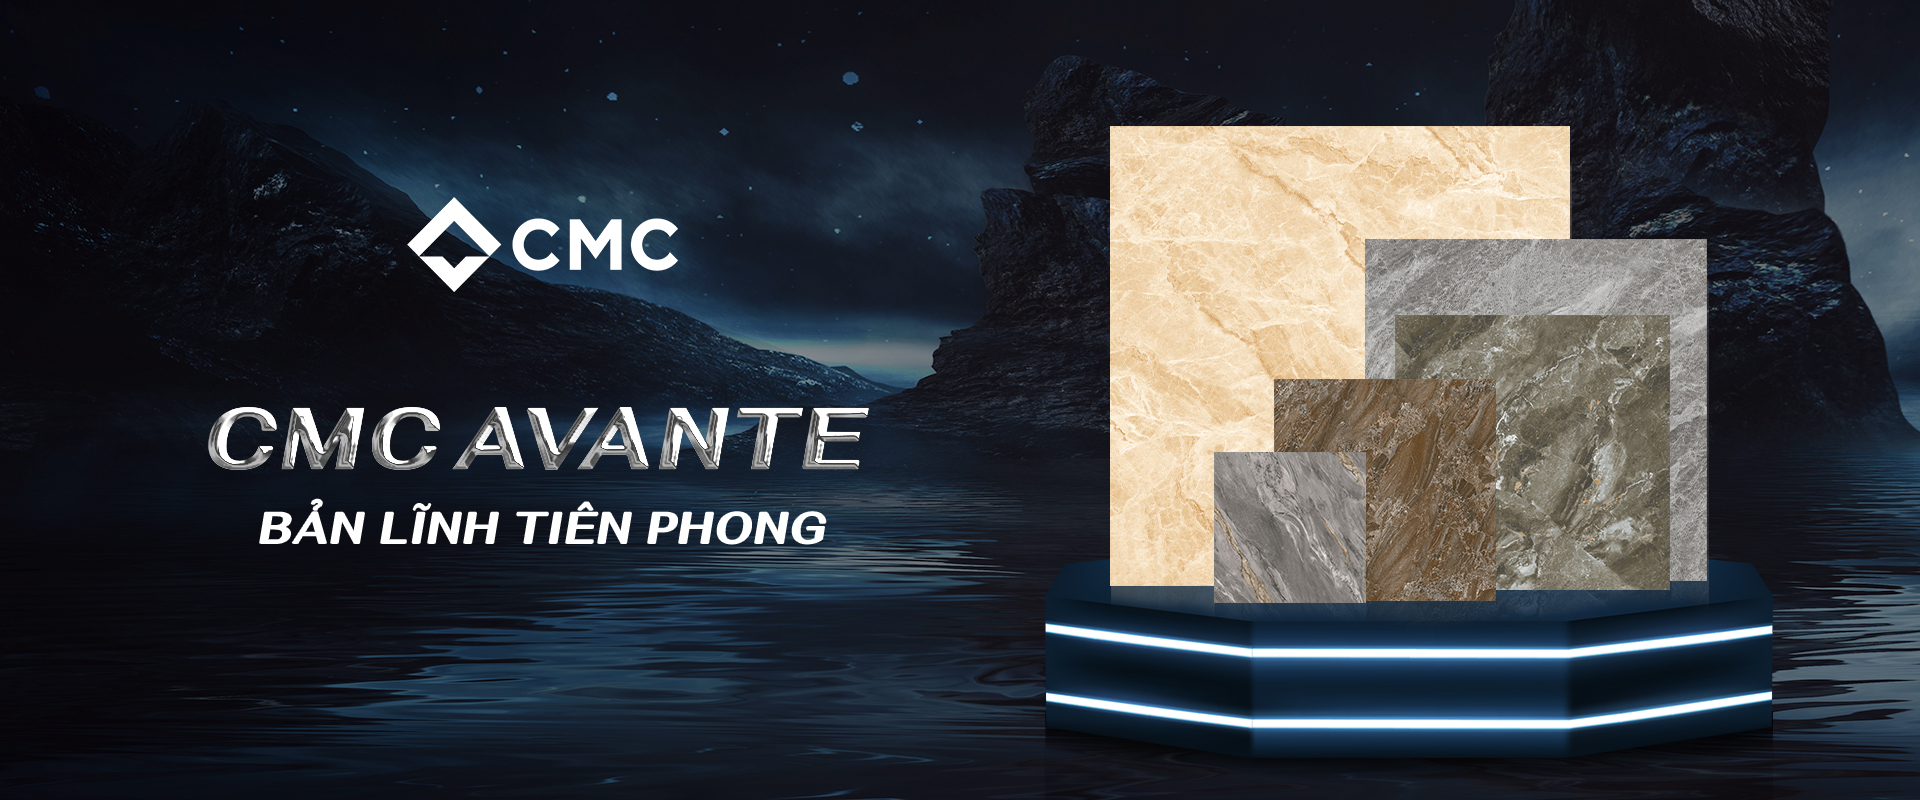 Gạch Granite CMC Avante lấy cảm hứng họa tiết bề mặt từ những dòng chảy mạnh mẻ của các thác nước hùng vĩ trên thế giới